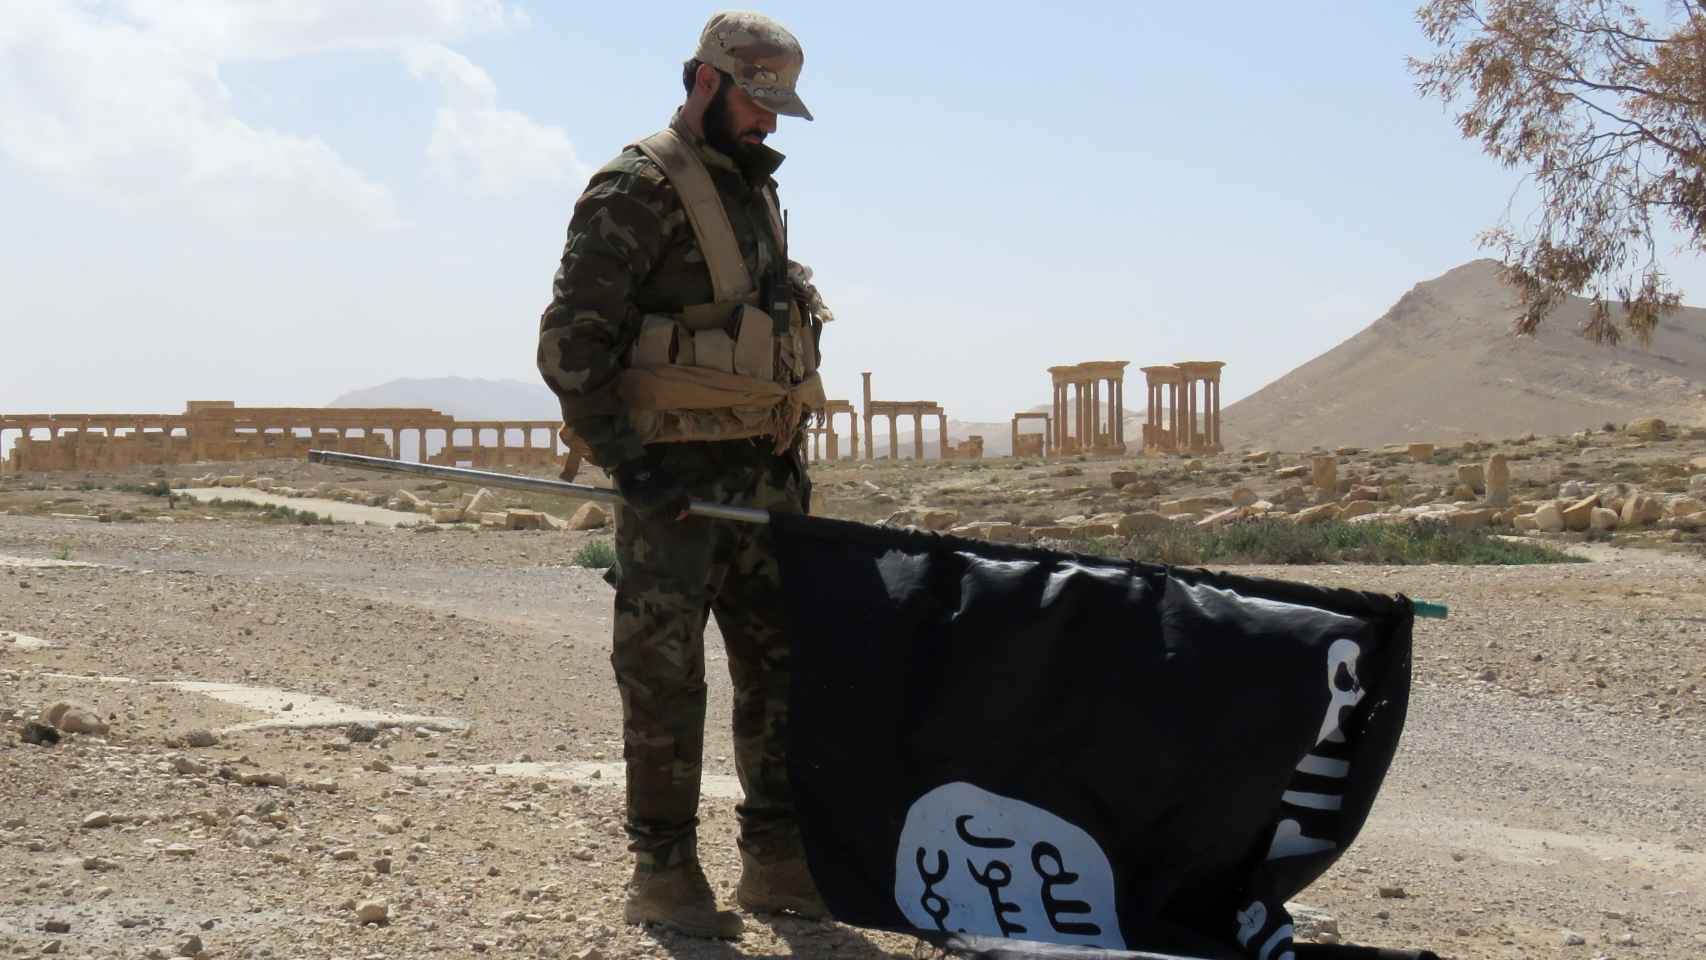 Un soldado retira una bandera del Estado Islámico en Siria, en una imagen de archivo.